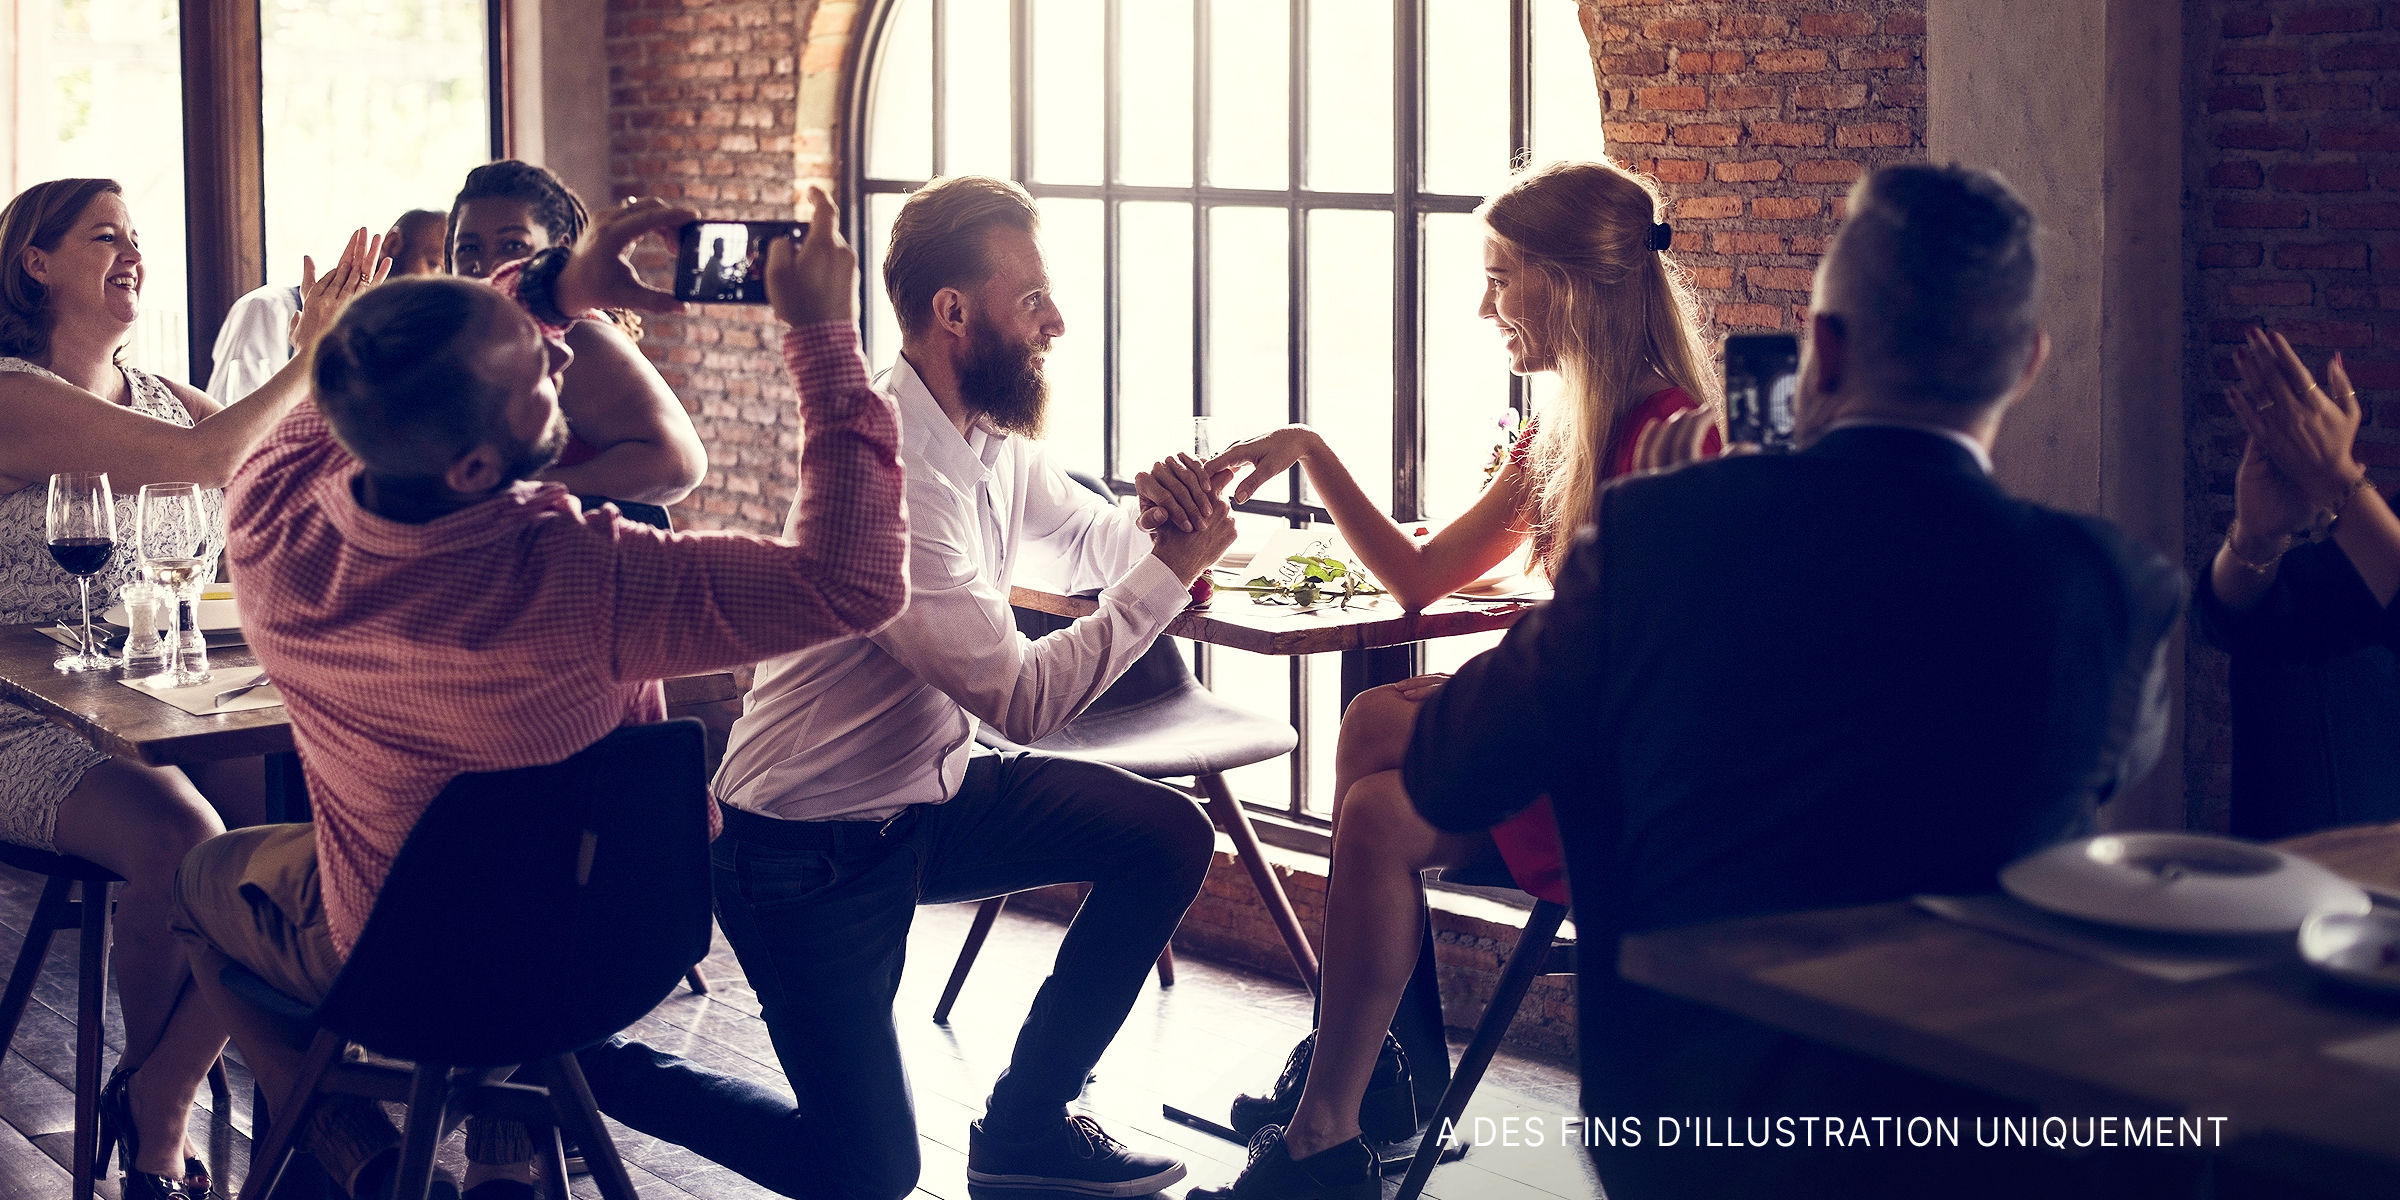 Un homme à genoux, faisant sa demande en mariage dans un restaurant. | Source : Shutterstock